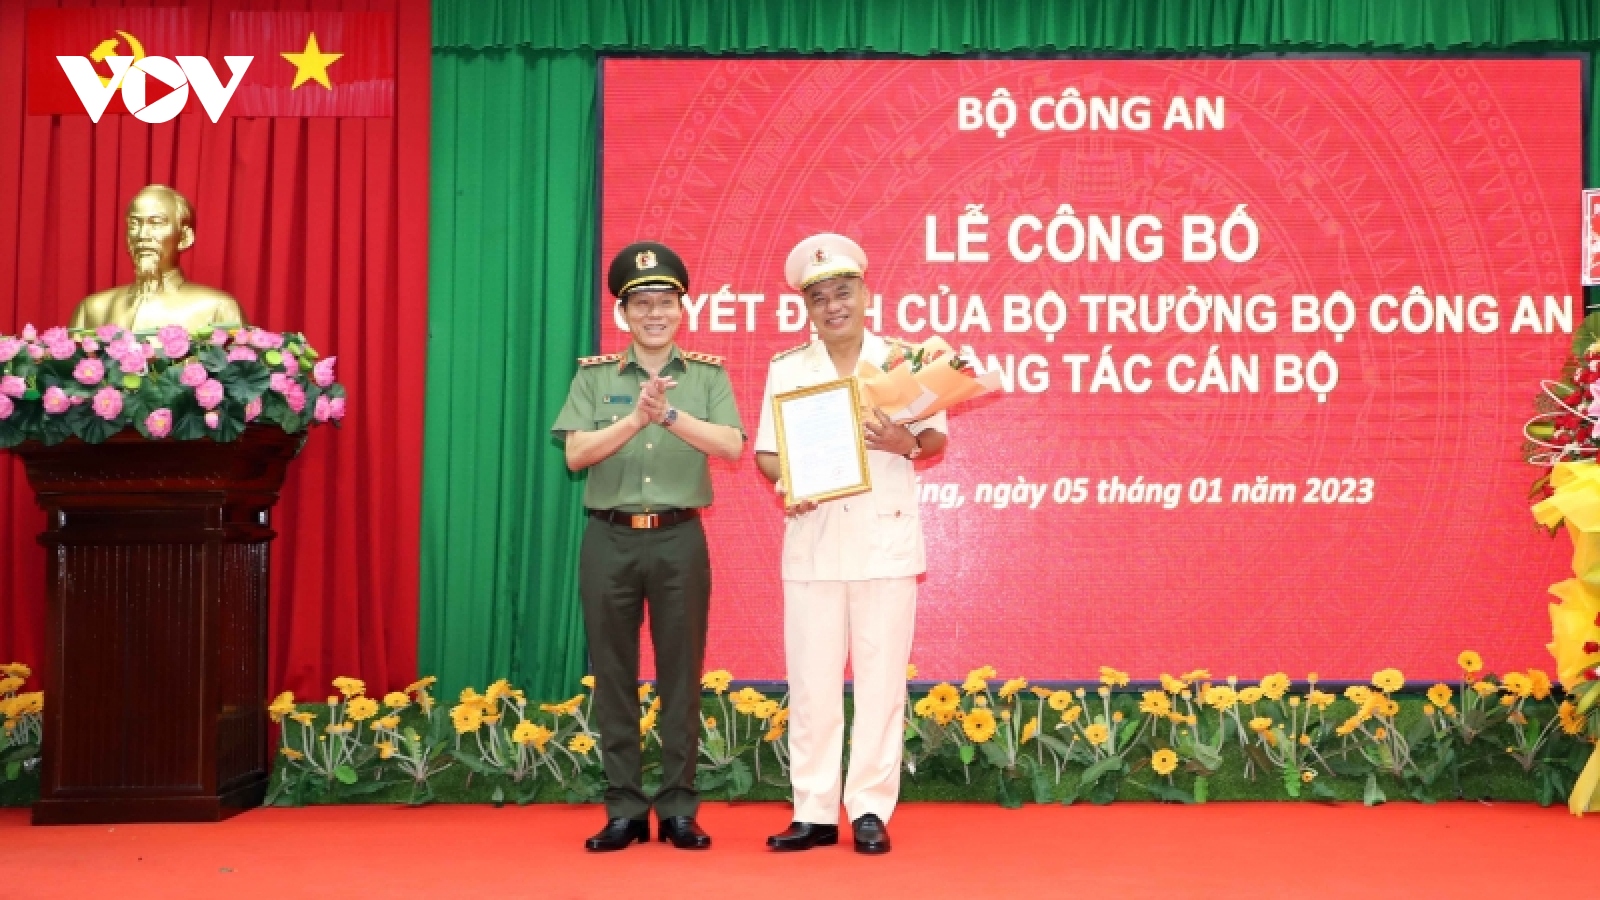 Đại tá Bùi Quốc Khánh giữ chức vụ Giám đốc Công an tỉnh Sóc Trăng